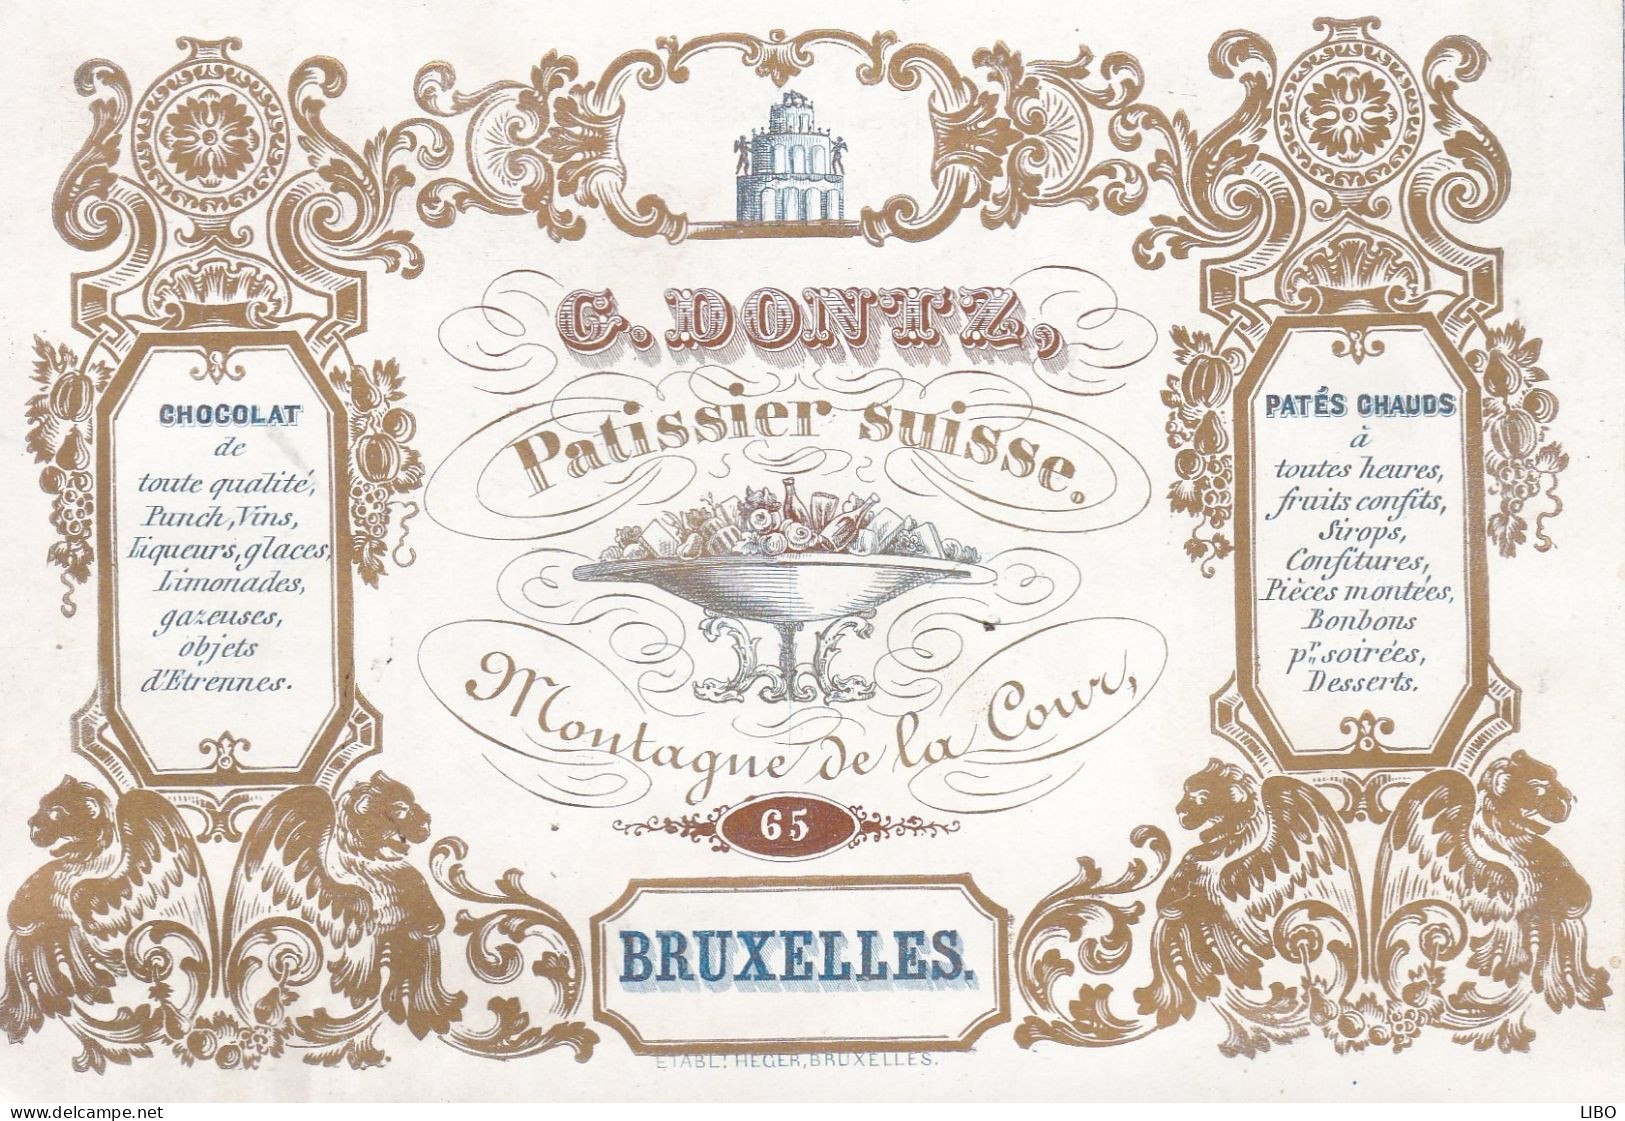 Bruxelles Pâtissier Suisse DONTZ Montagne De La Cour Carte De Visite Porcelaine Format + Grand Carte Postale C. 1850 - Cartes De Visite